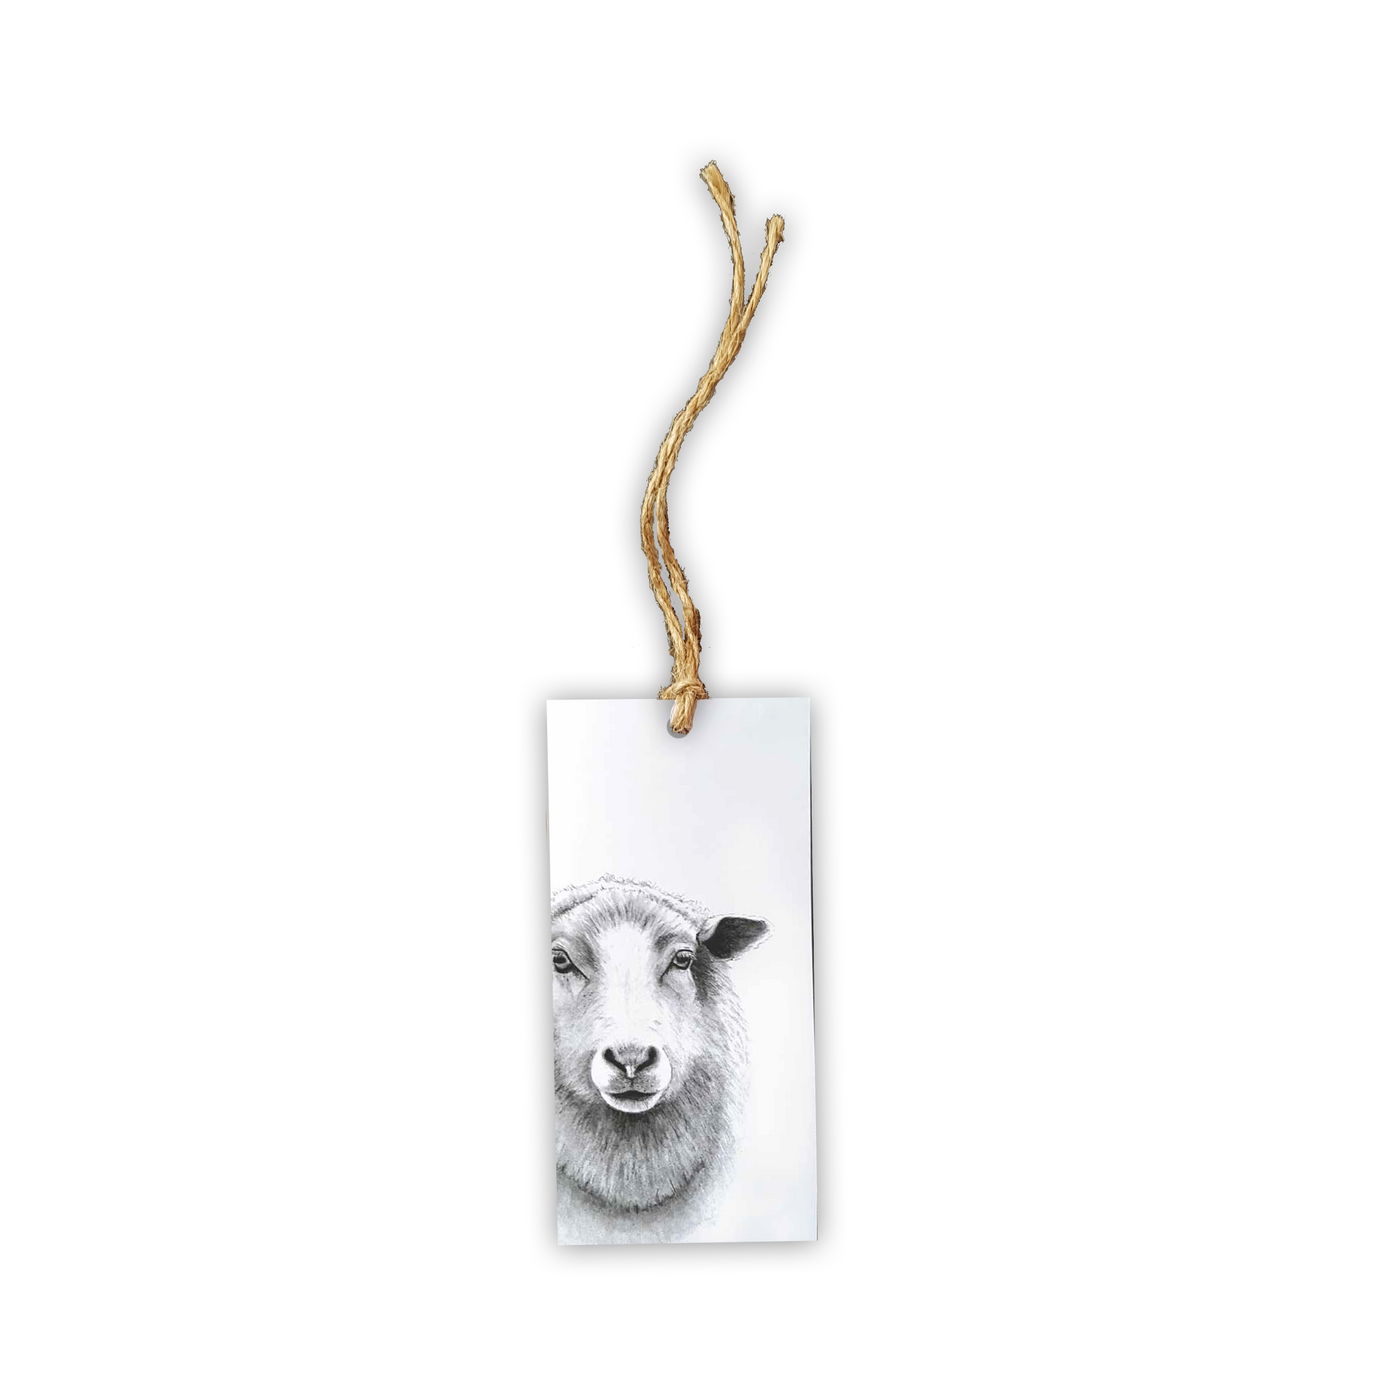 Sheep Tag - Wholesale